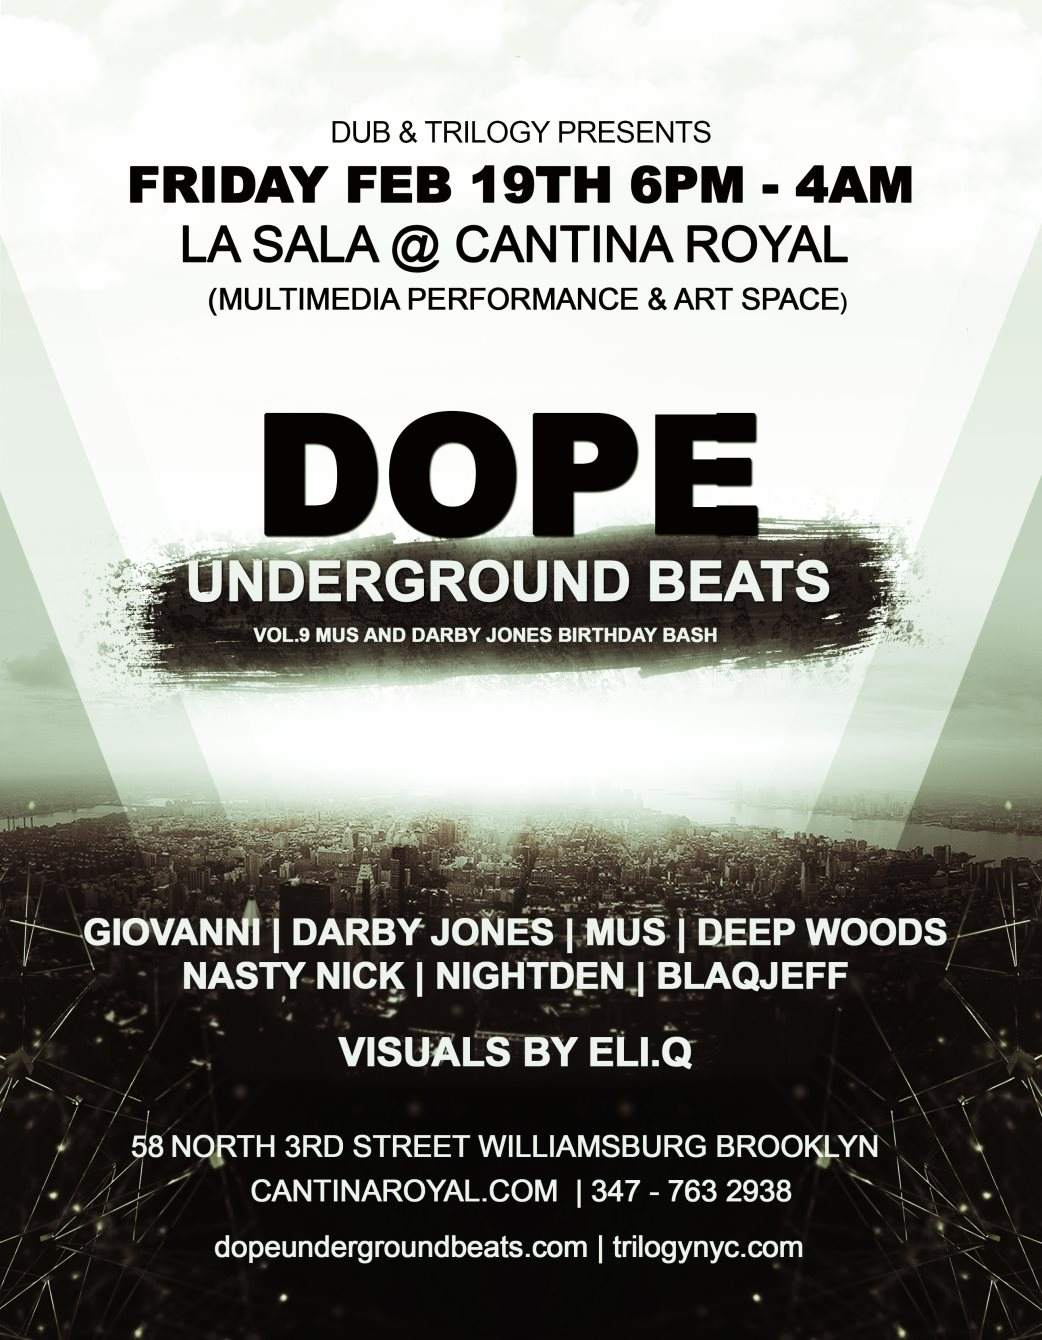 DUB & Trilogy presents: Dope Underground Beats Vol.9 - フライヤー表